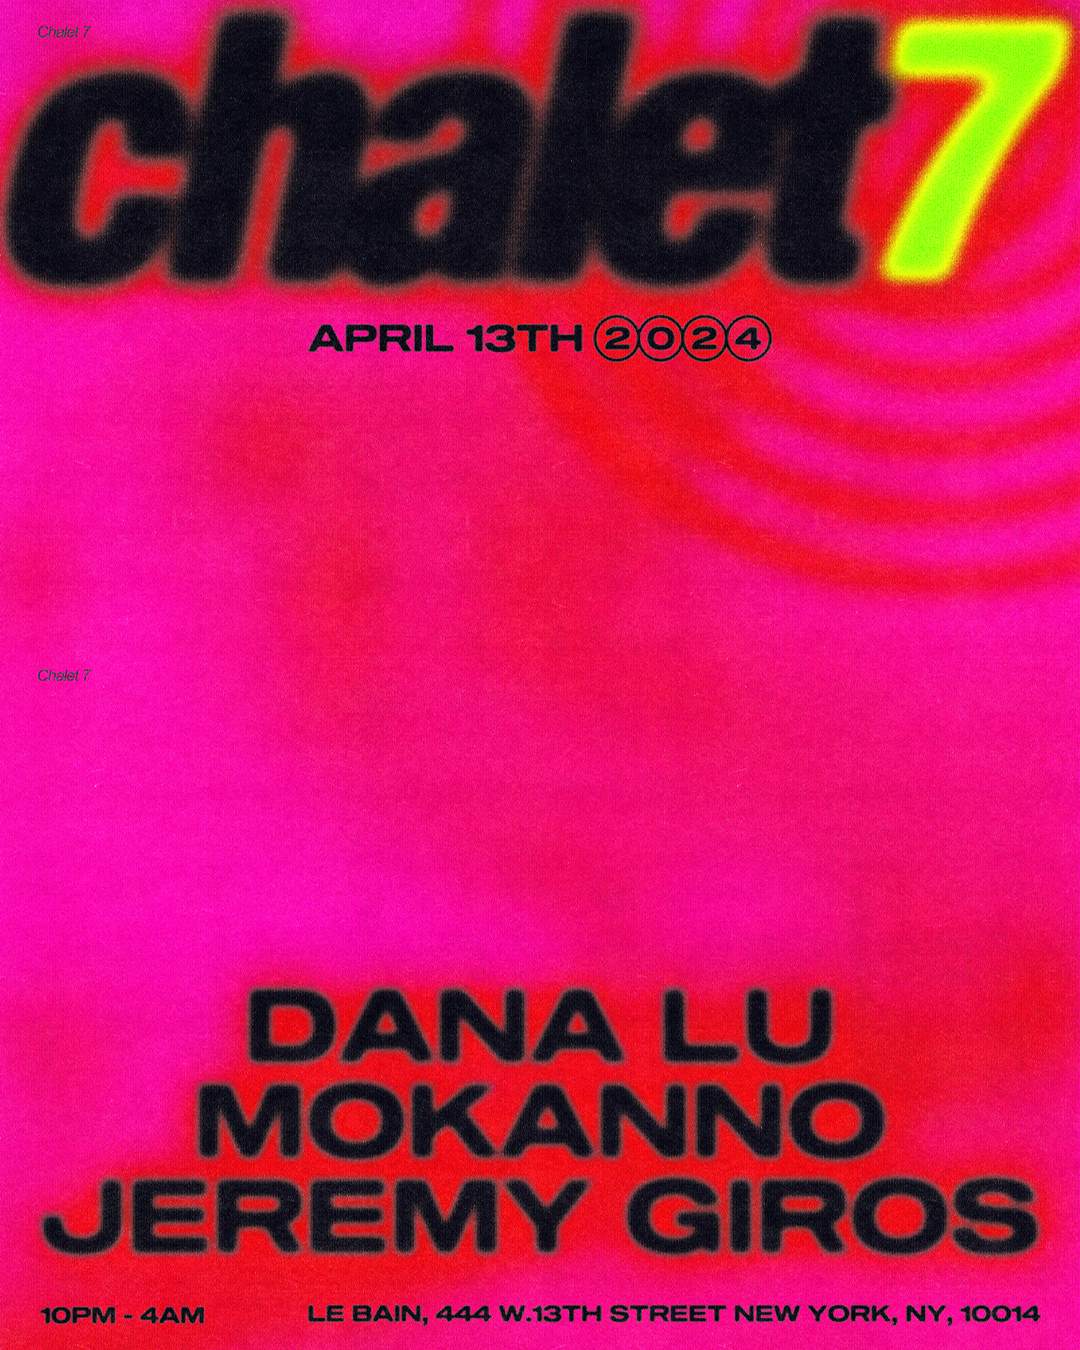 Chalet 7 feat. Dana Lu, Mokanno & Jeremy Giros - Página frontal